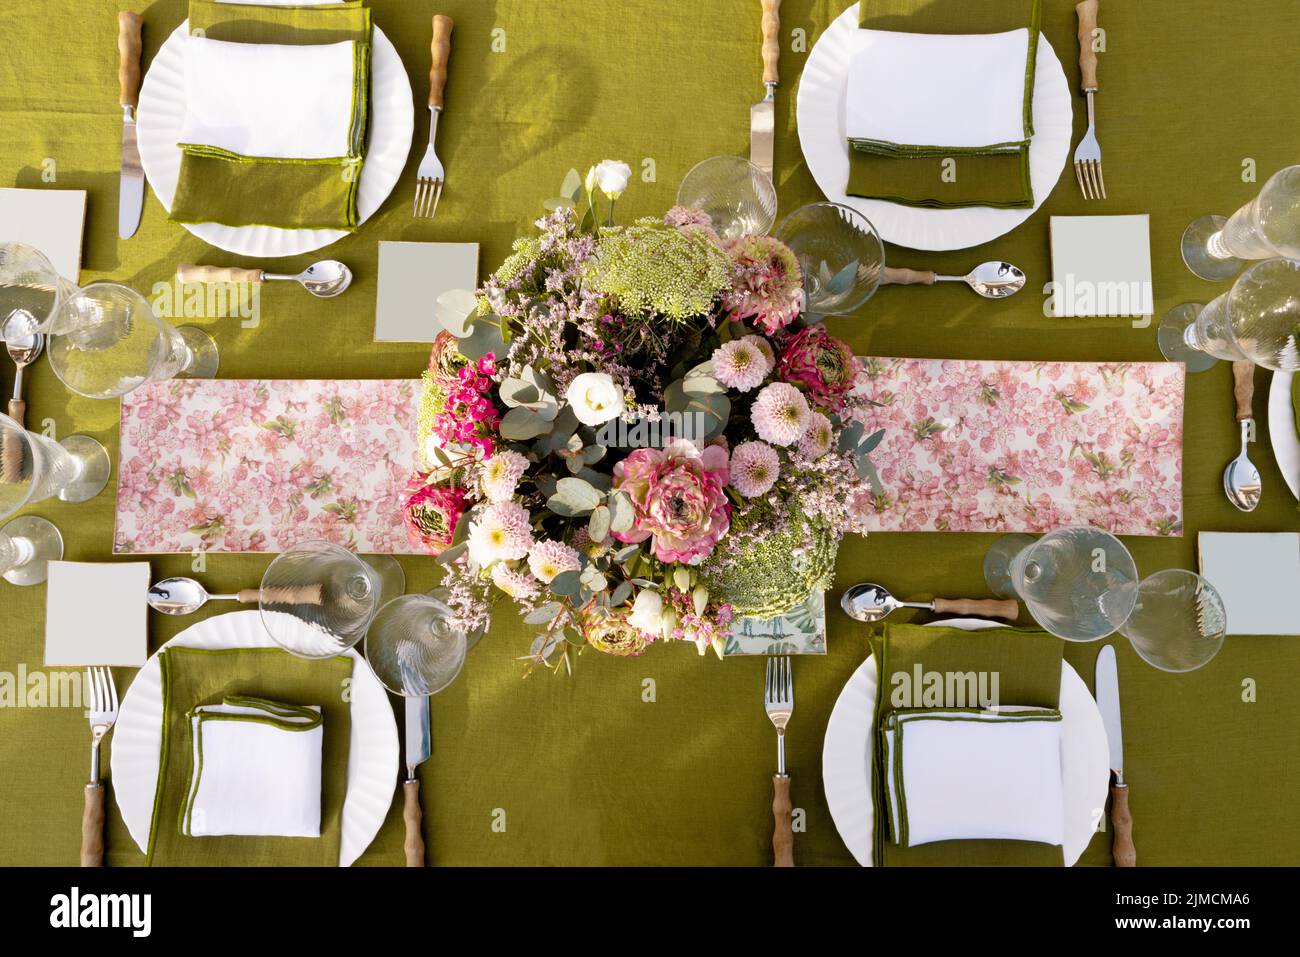 Vista superior de platos y cubiertos servidos en la mesa con flores frescas y cristalería en la terraza durante la preparación del evento festivo Foto de stock